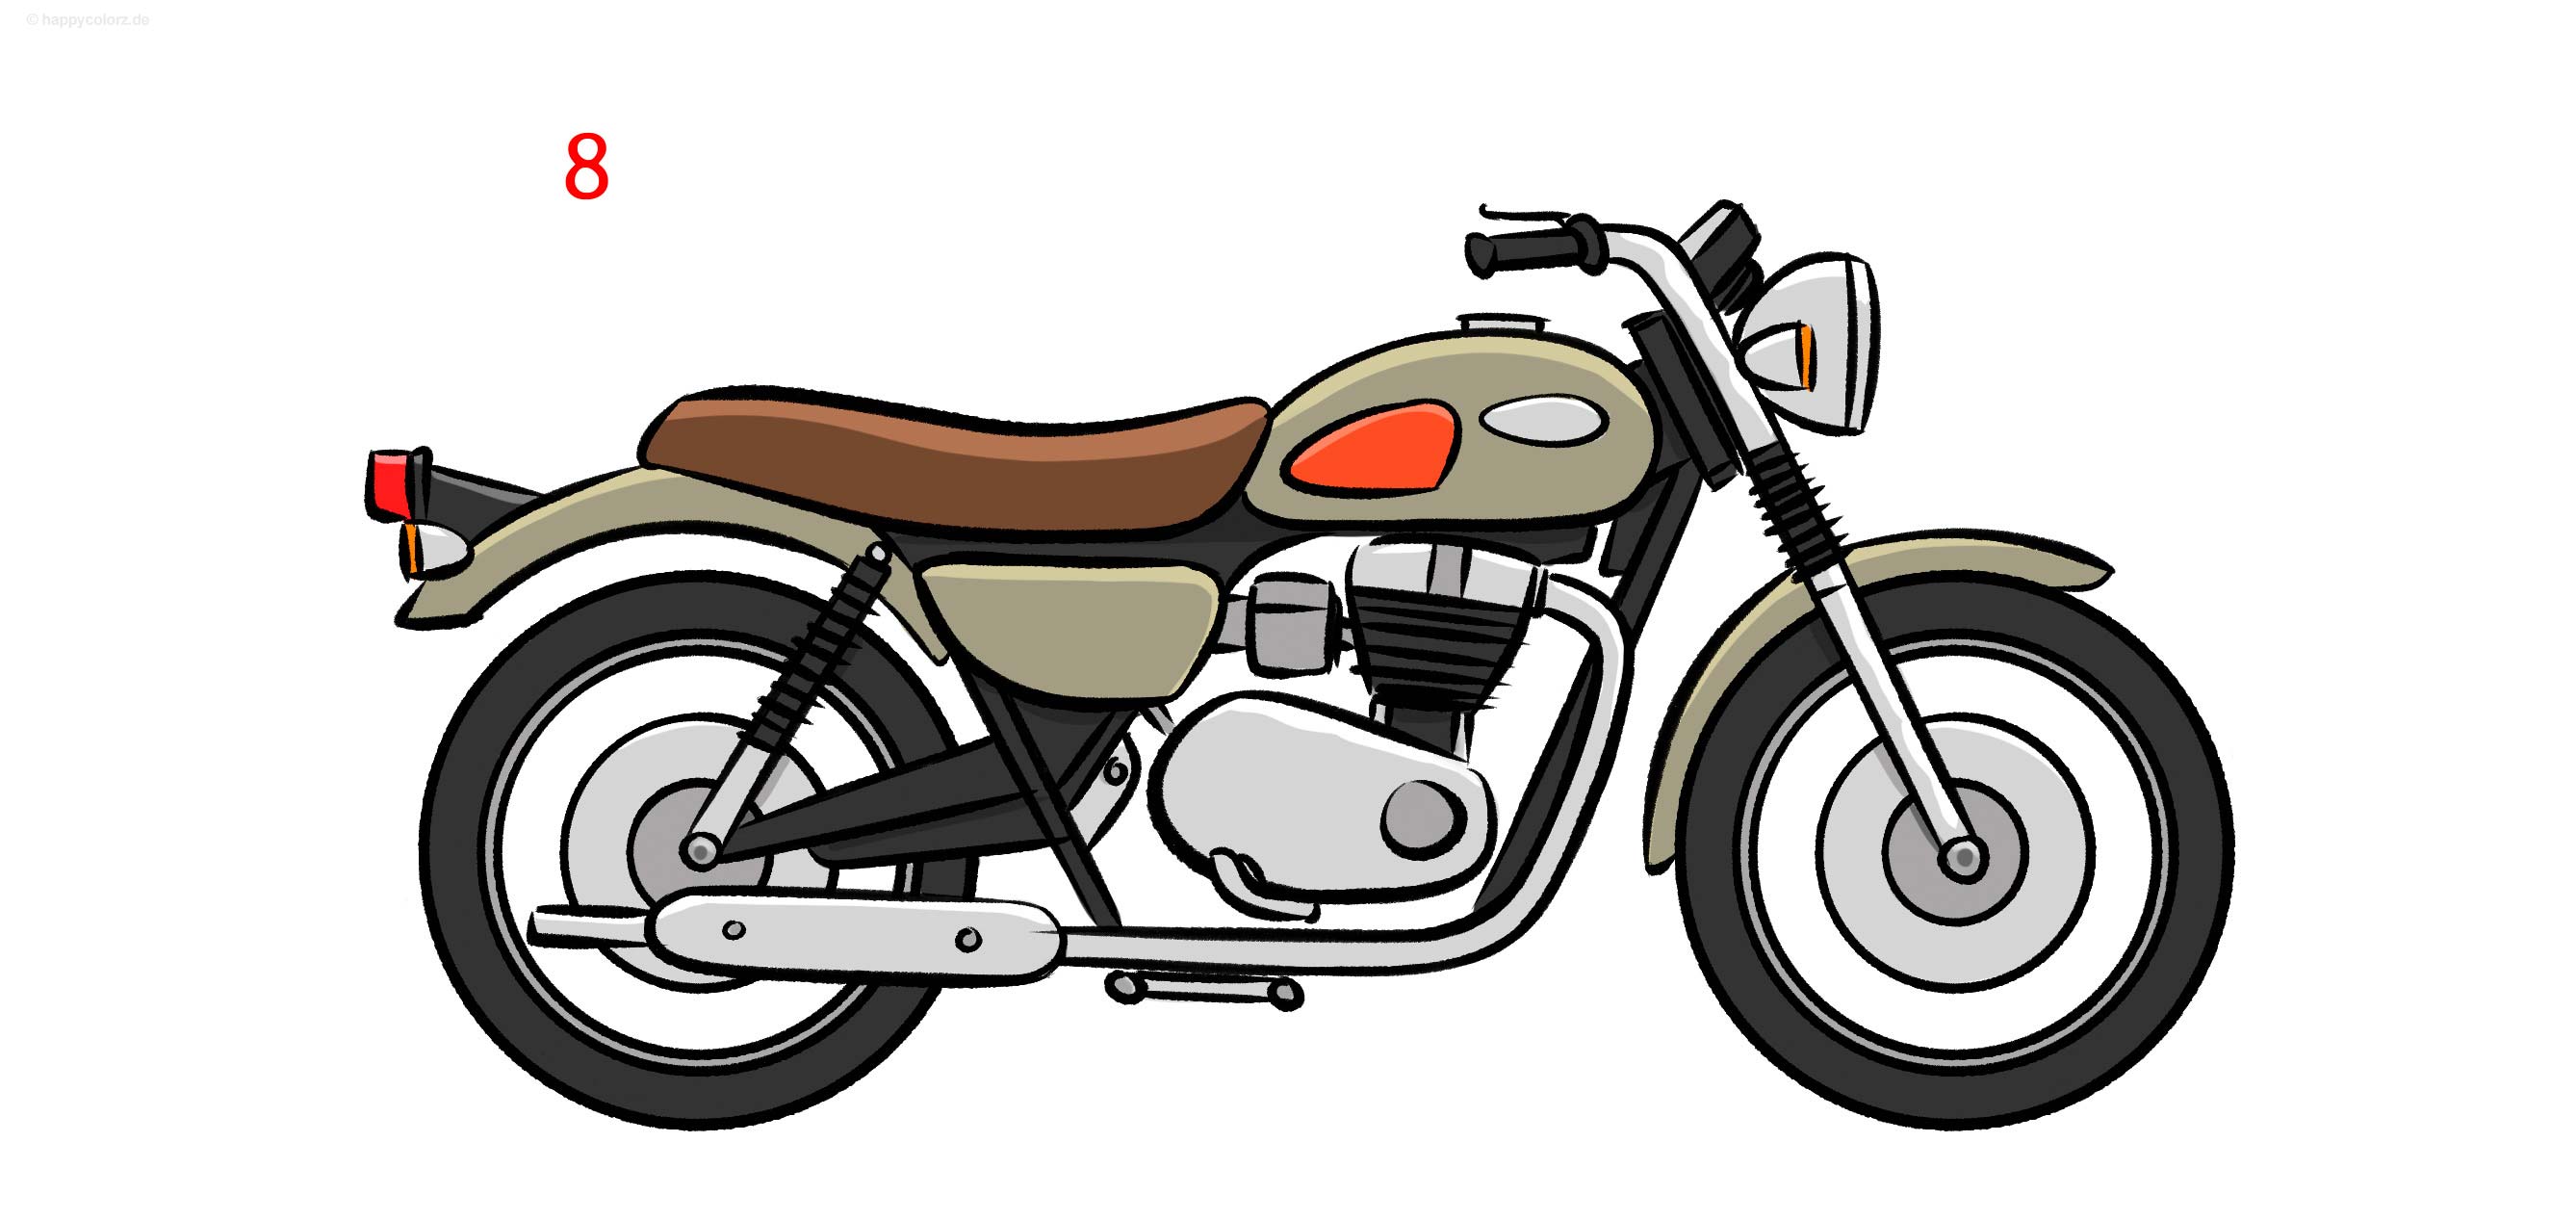 Motorrad zeichnen - Schritt für Schritt